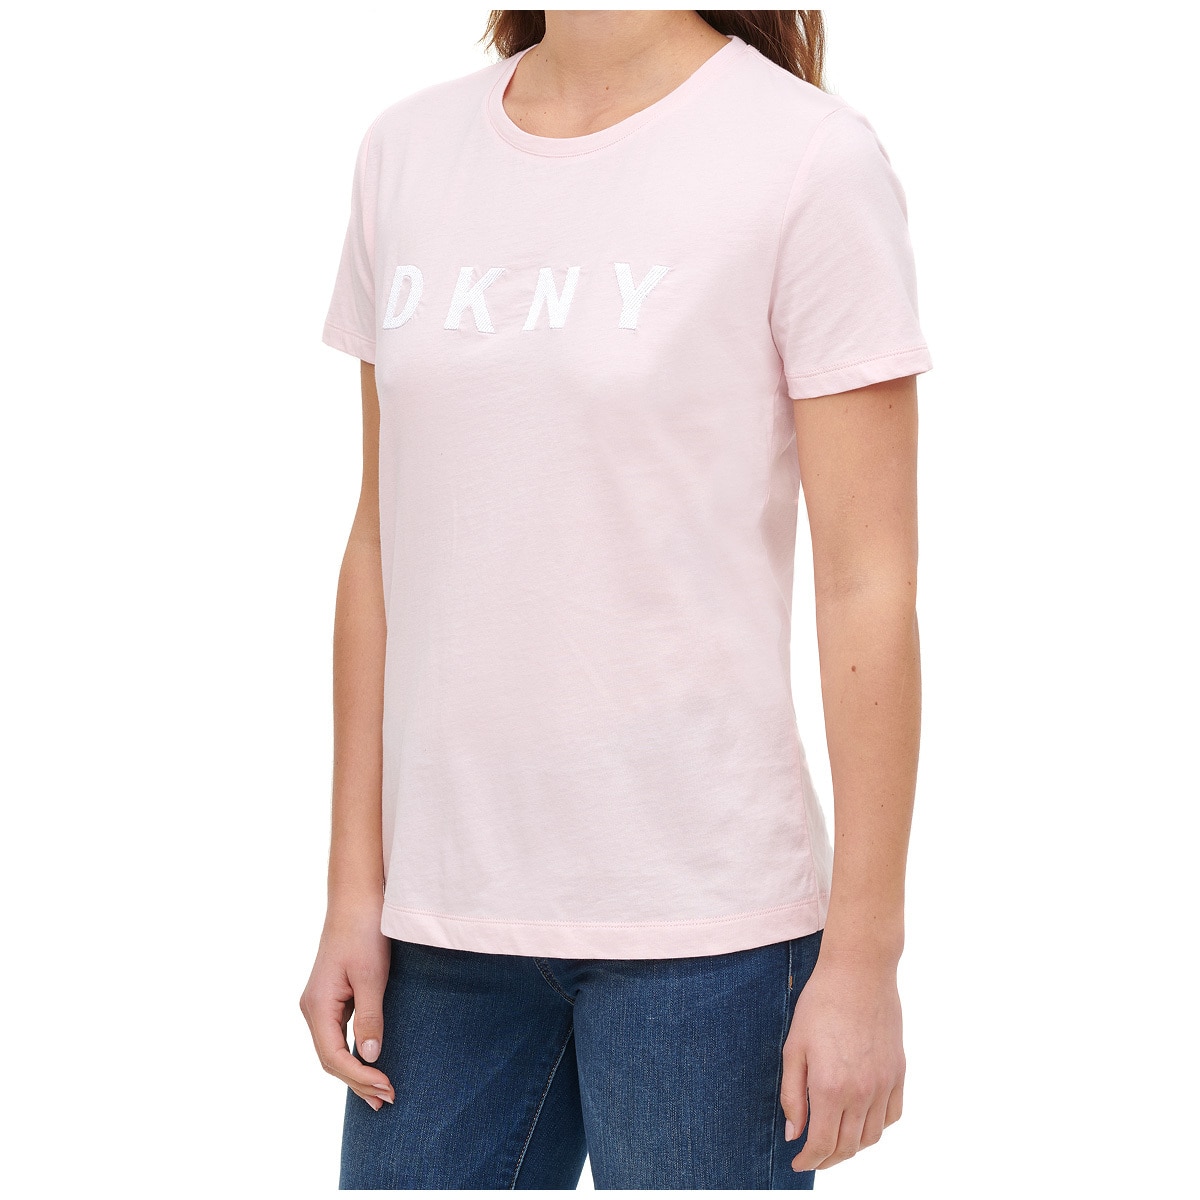 DKNY Women's Logo Tee - Cherry Blossom Pink